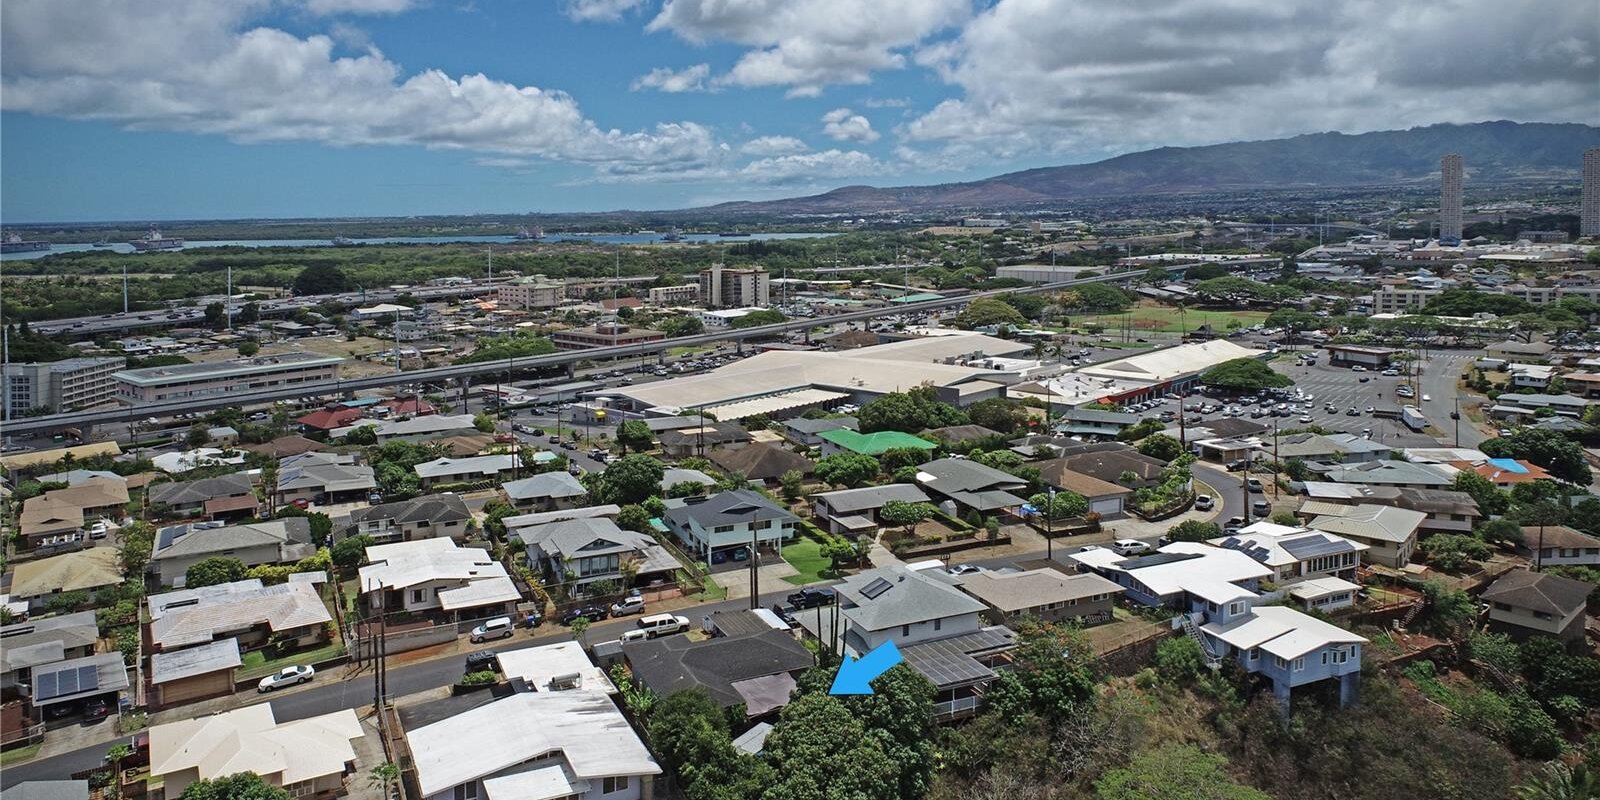 Houses in Honolulu and Pearl City on Oahu